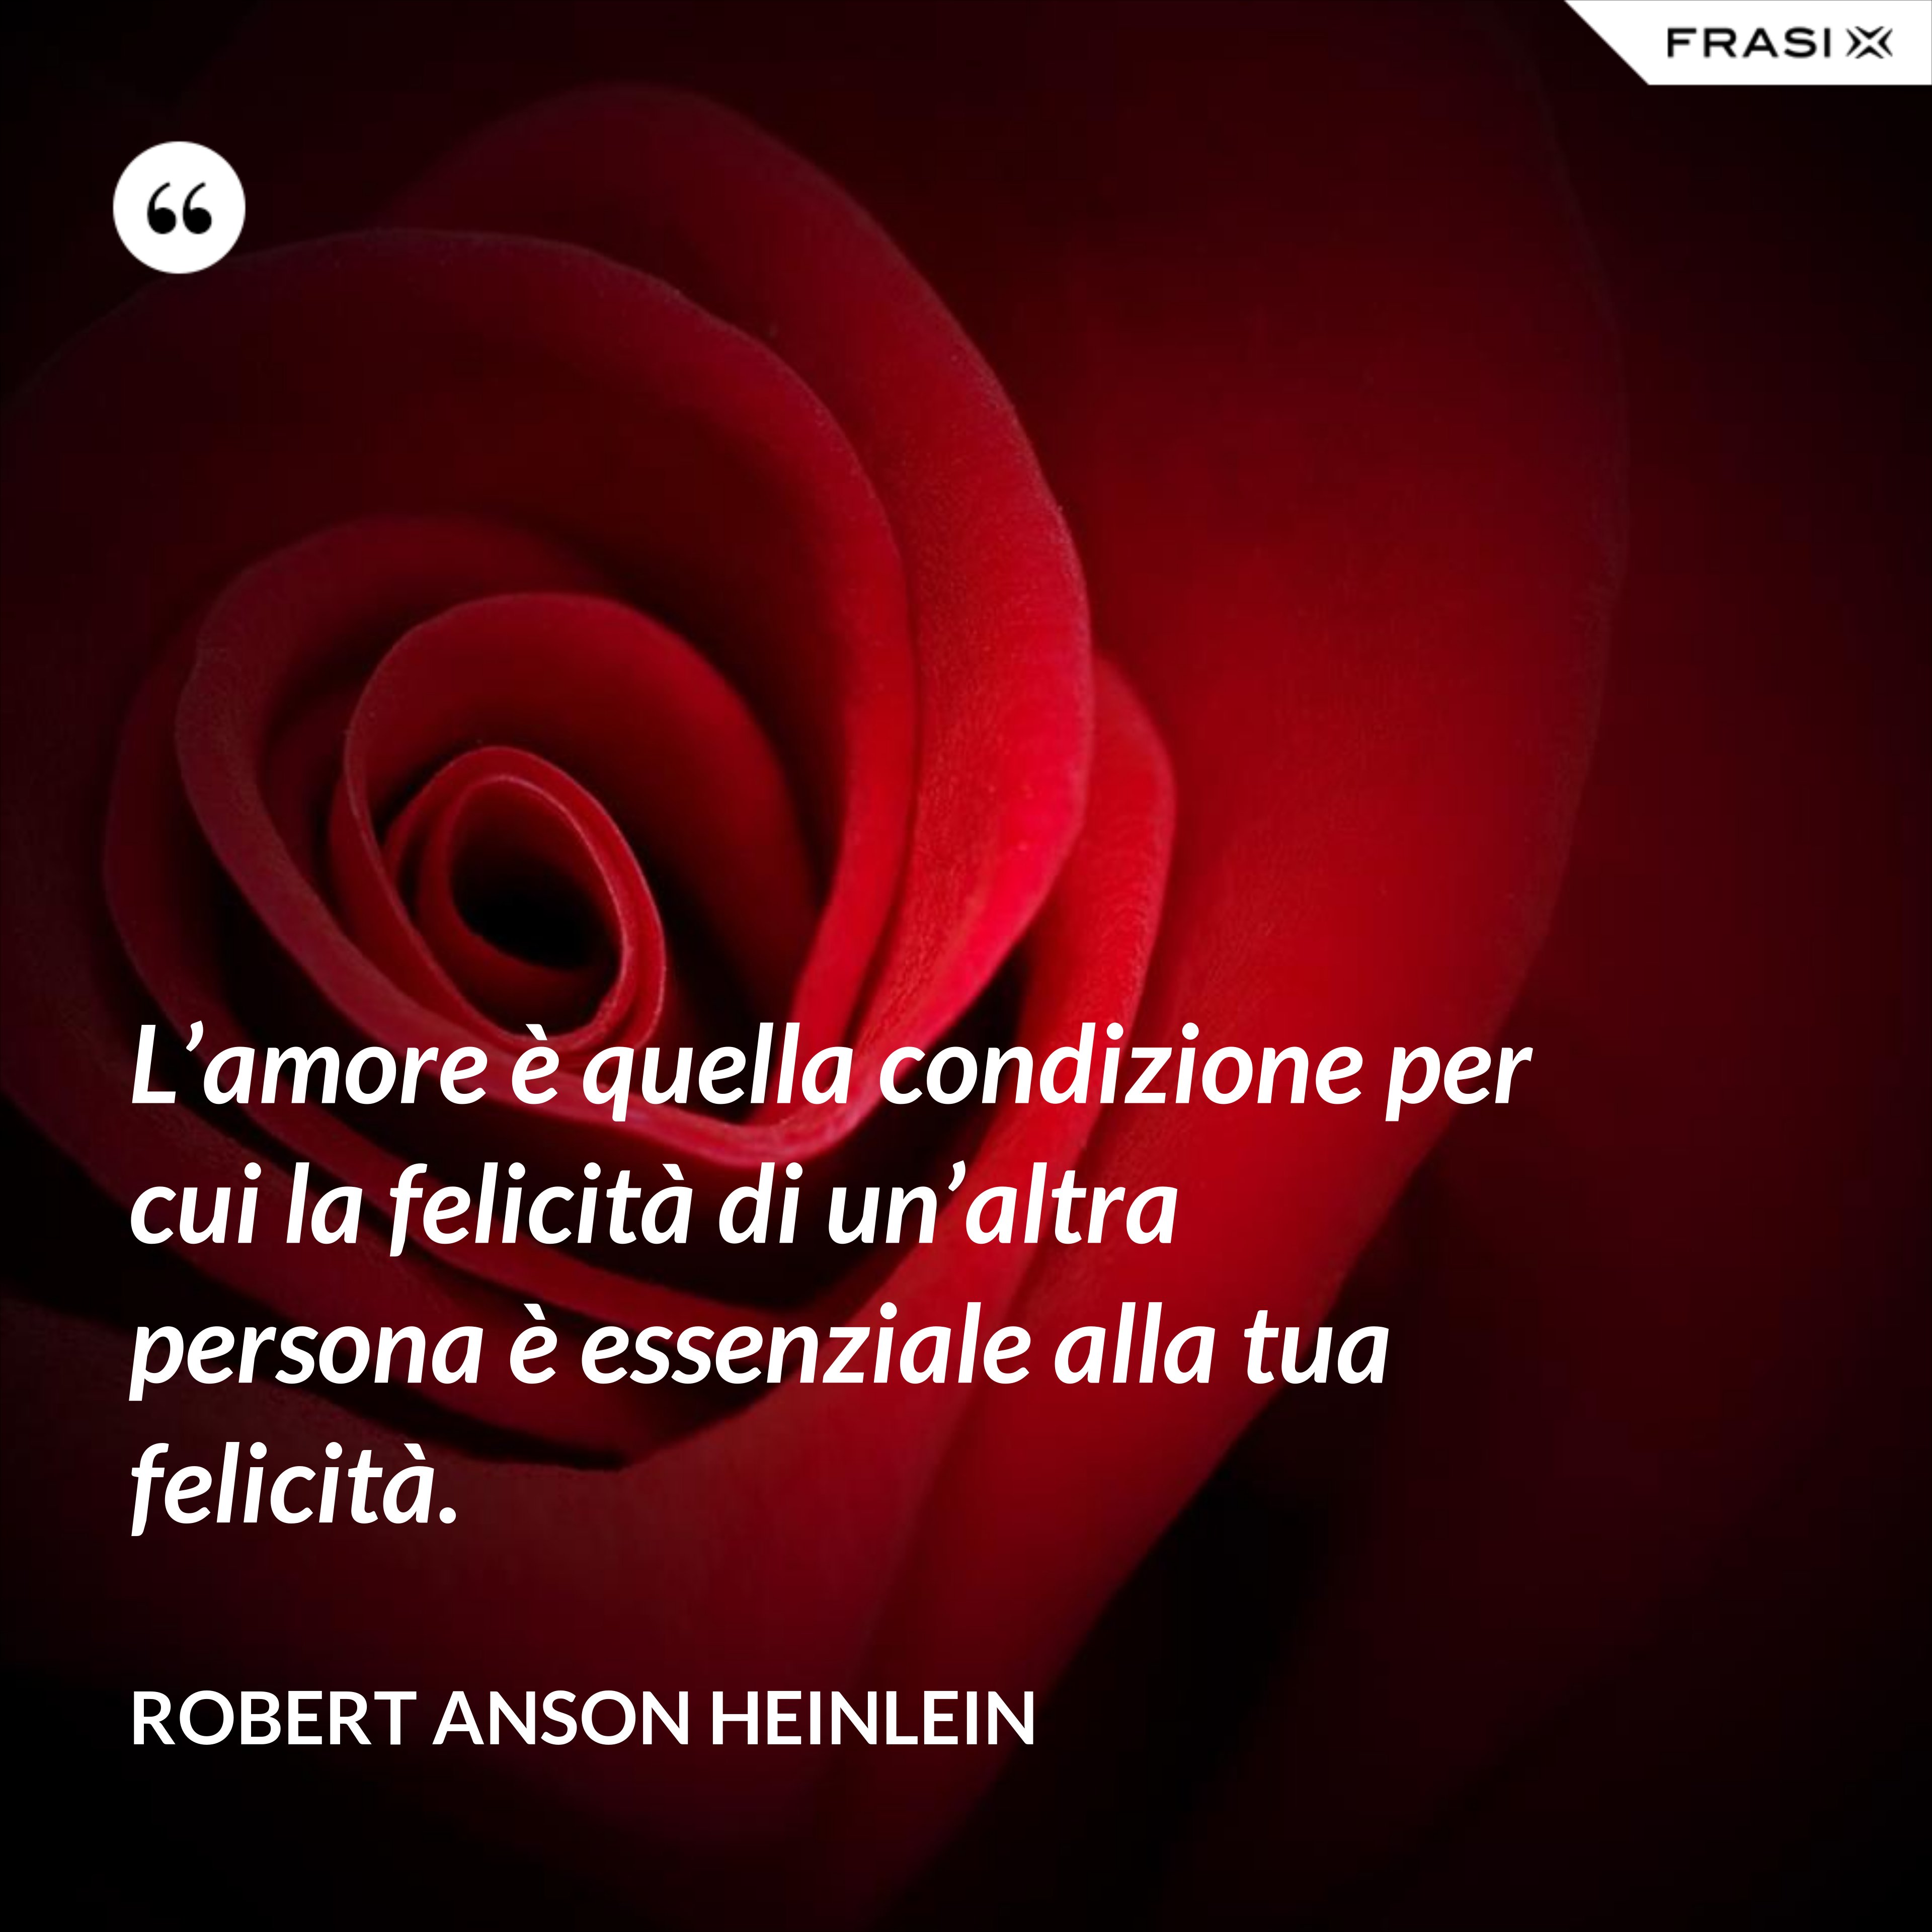 L’amore è quella condizione per cui la felicità di un’altra persona è essenziale alla tua felicità. - Robert Anson Heinlein